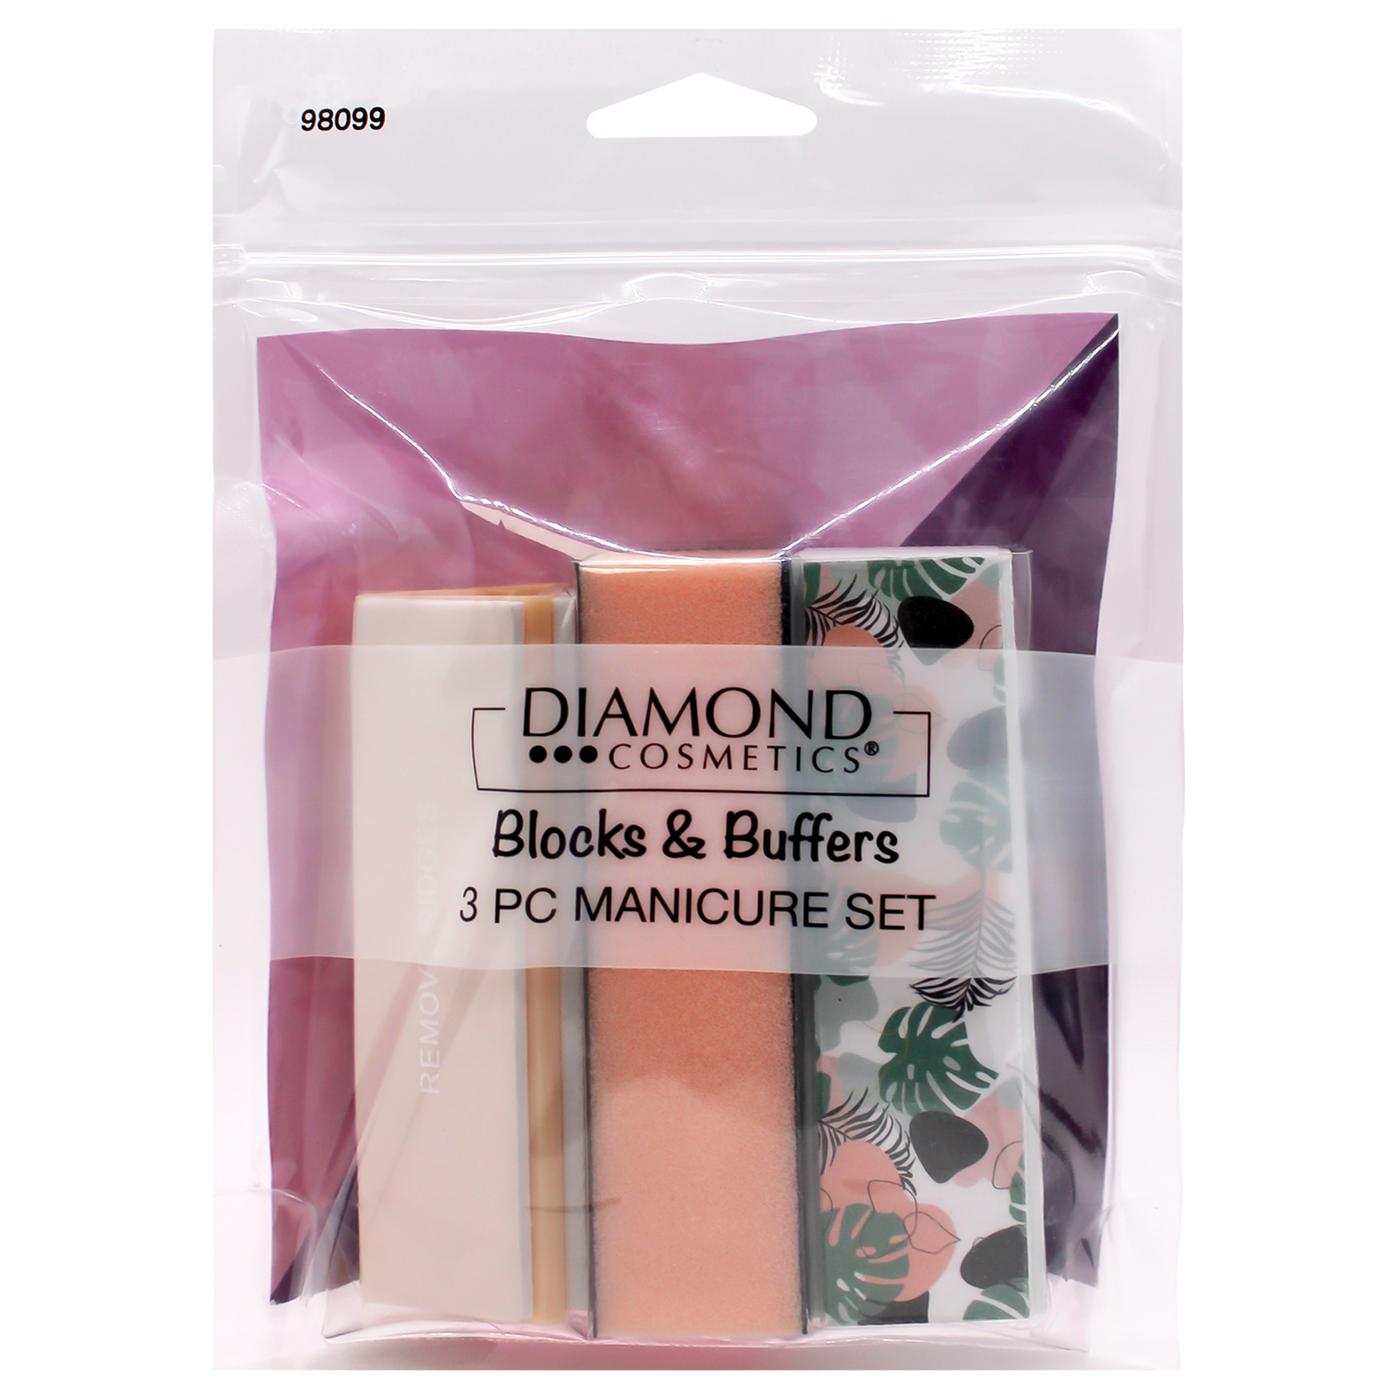 Diamond Cosmetics 3 Packs Blocks & Buffers; image 1 of 2